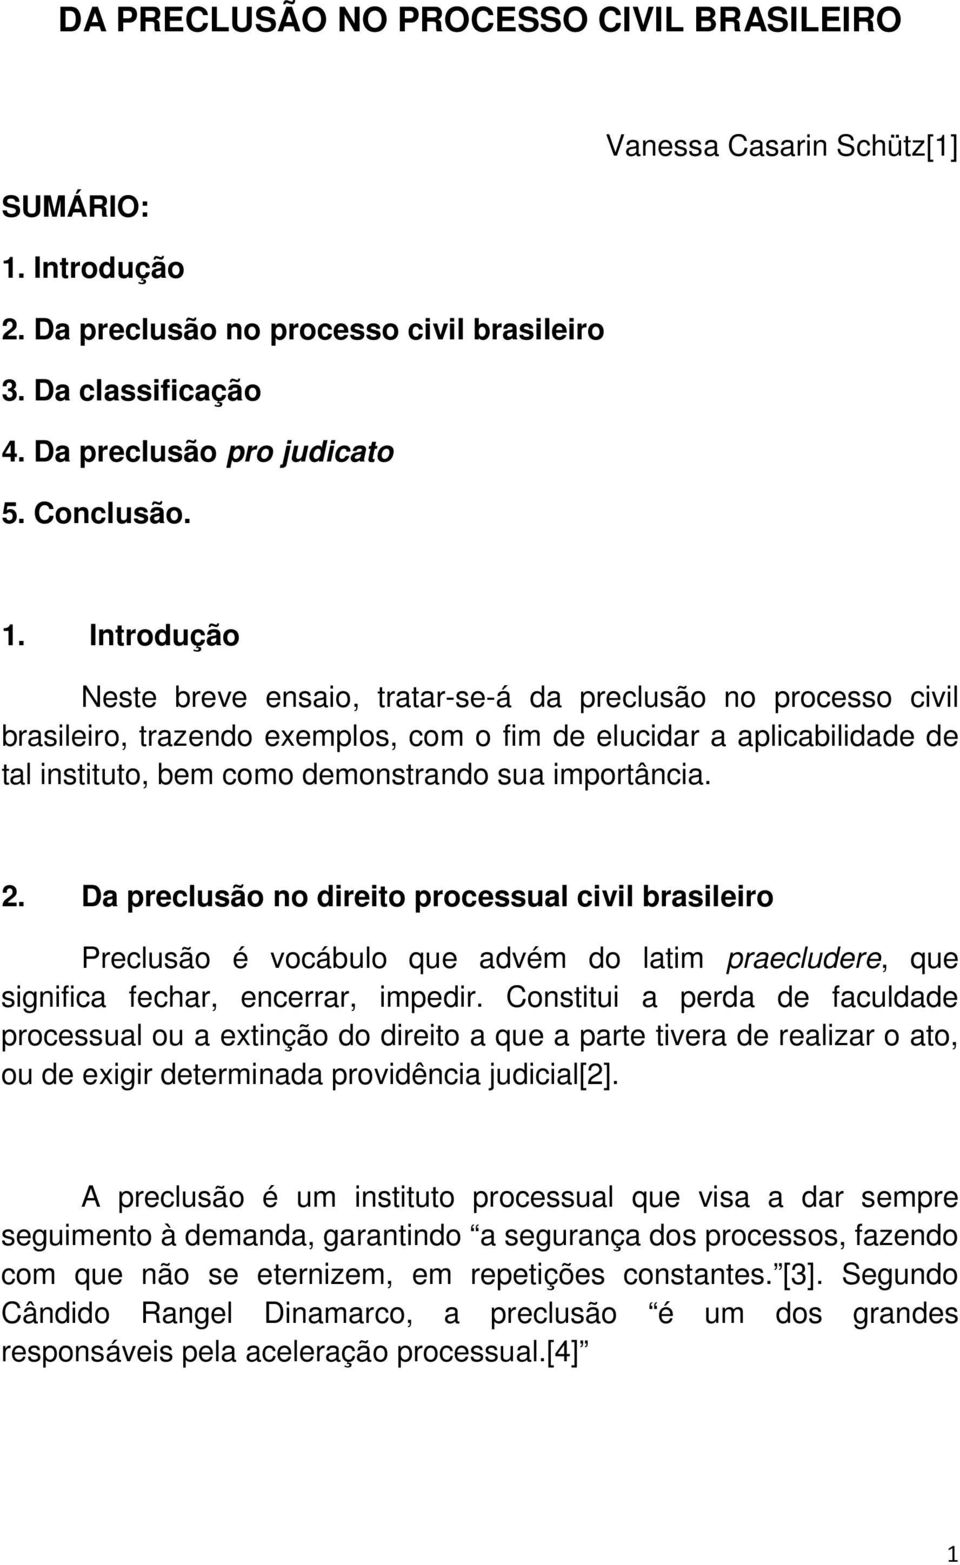 importância. 2. Da preclusão no direito processual civil brasileiro Preclusão é vocábulo que advém do latim praecludere, que significa fechar, encerrar, impedir.